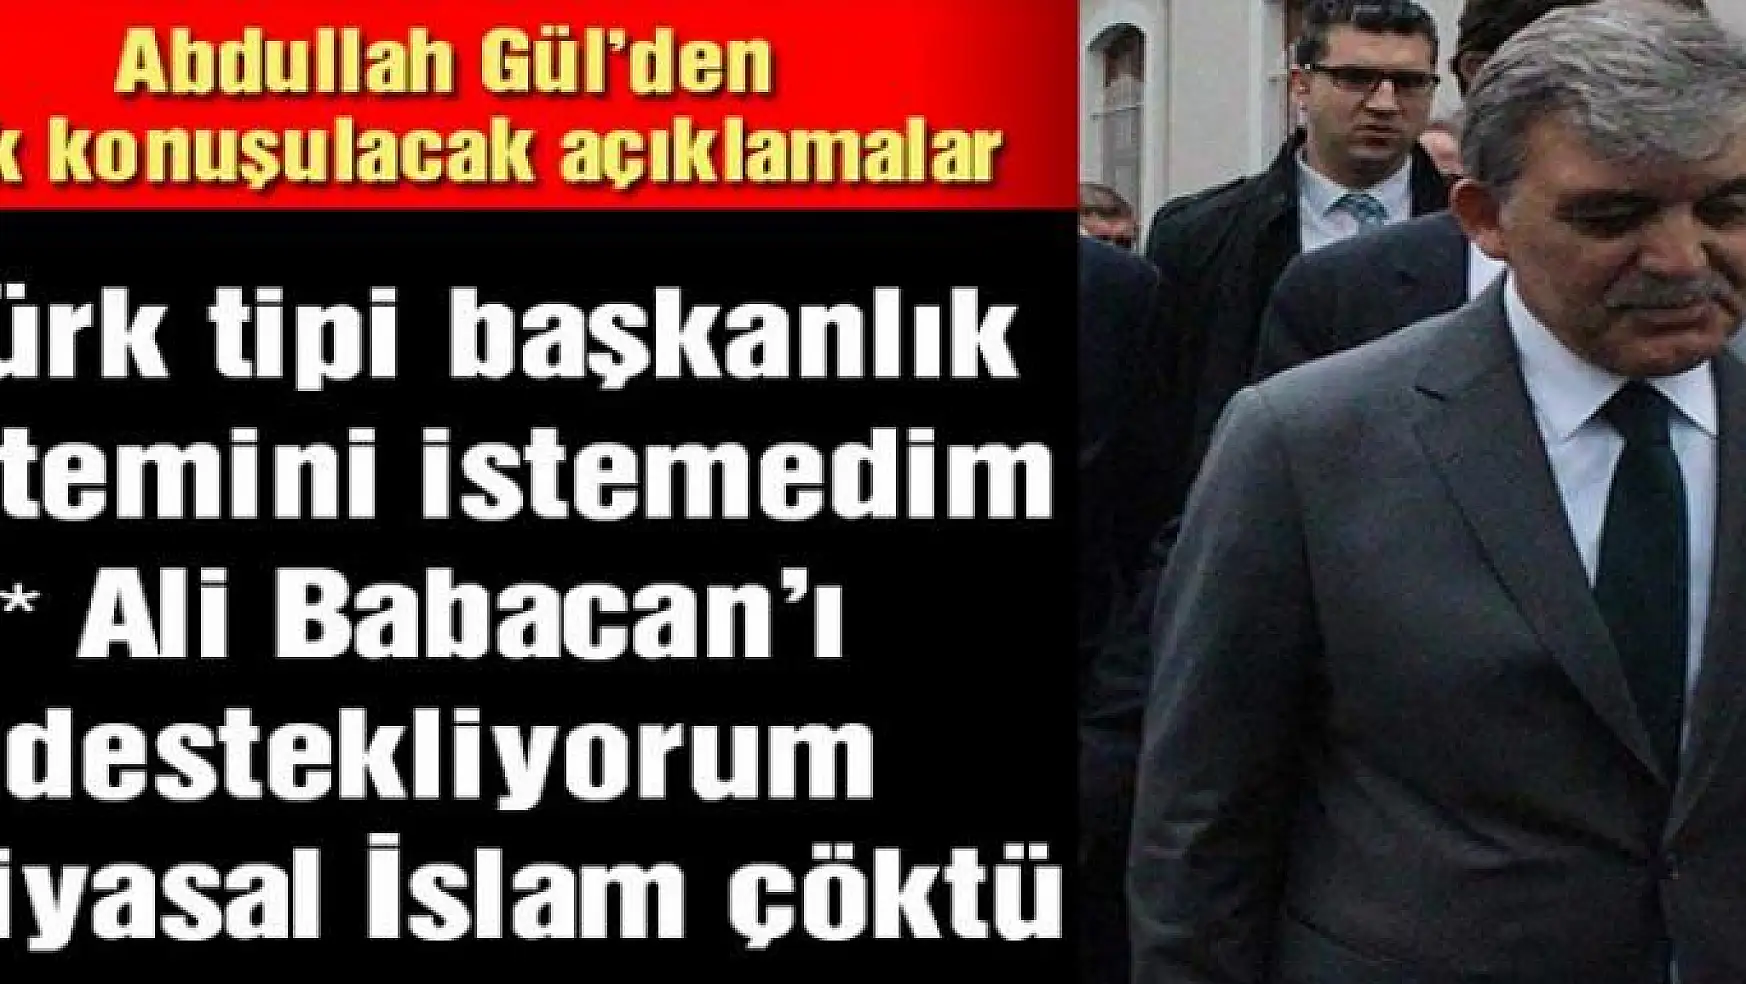 Abdullah Gül'den son dakika açıklamaları: Parlamenter sisteme dönmek şart